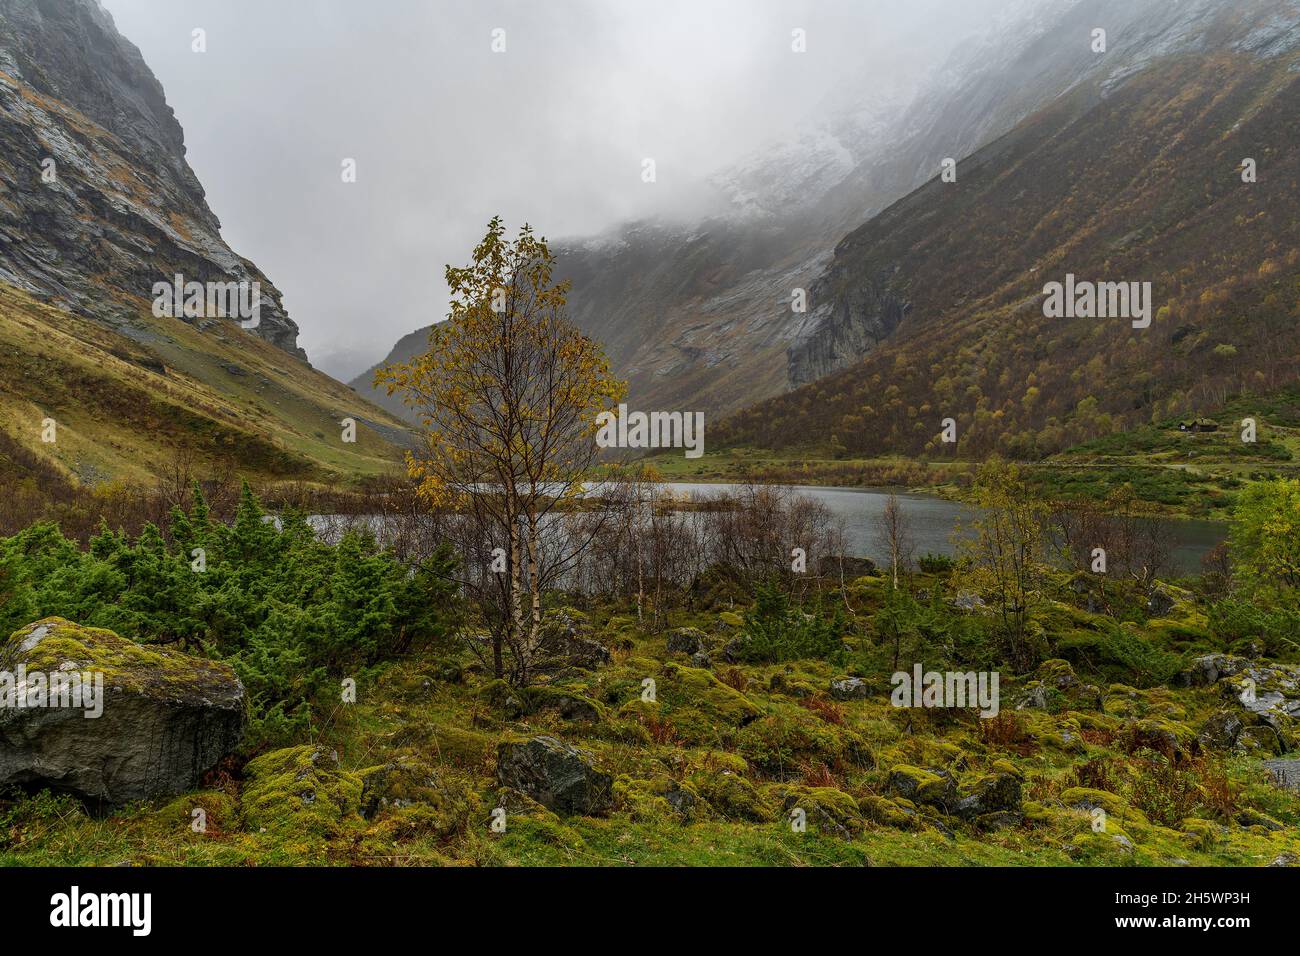 gelbe Birke im Tal von Sunnmørsalpene, mit See im engen Tal zwischen steilen Bergen. Herbst in Norwegen. Norwegisches Wetter, nebung und regnerisch. Foto Stock